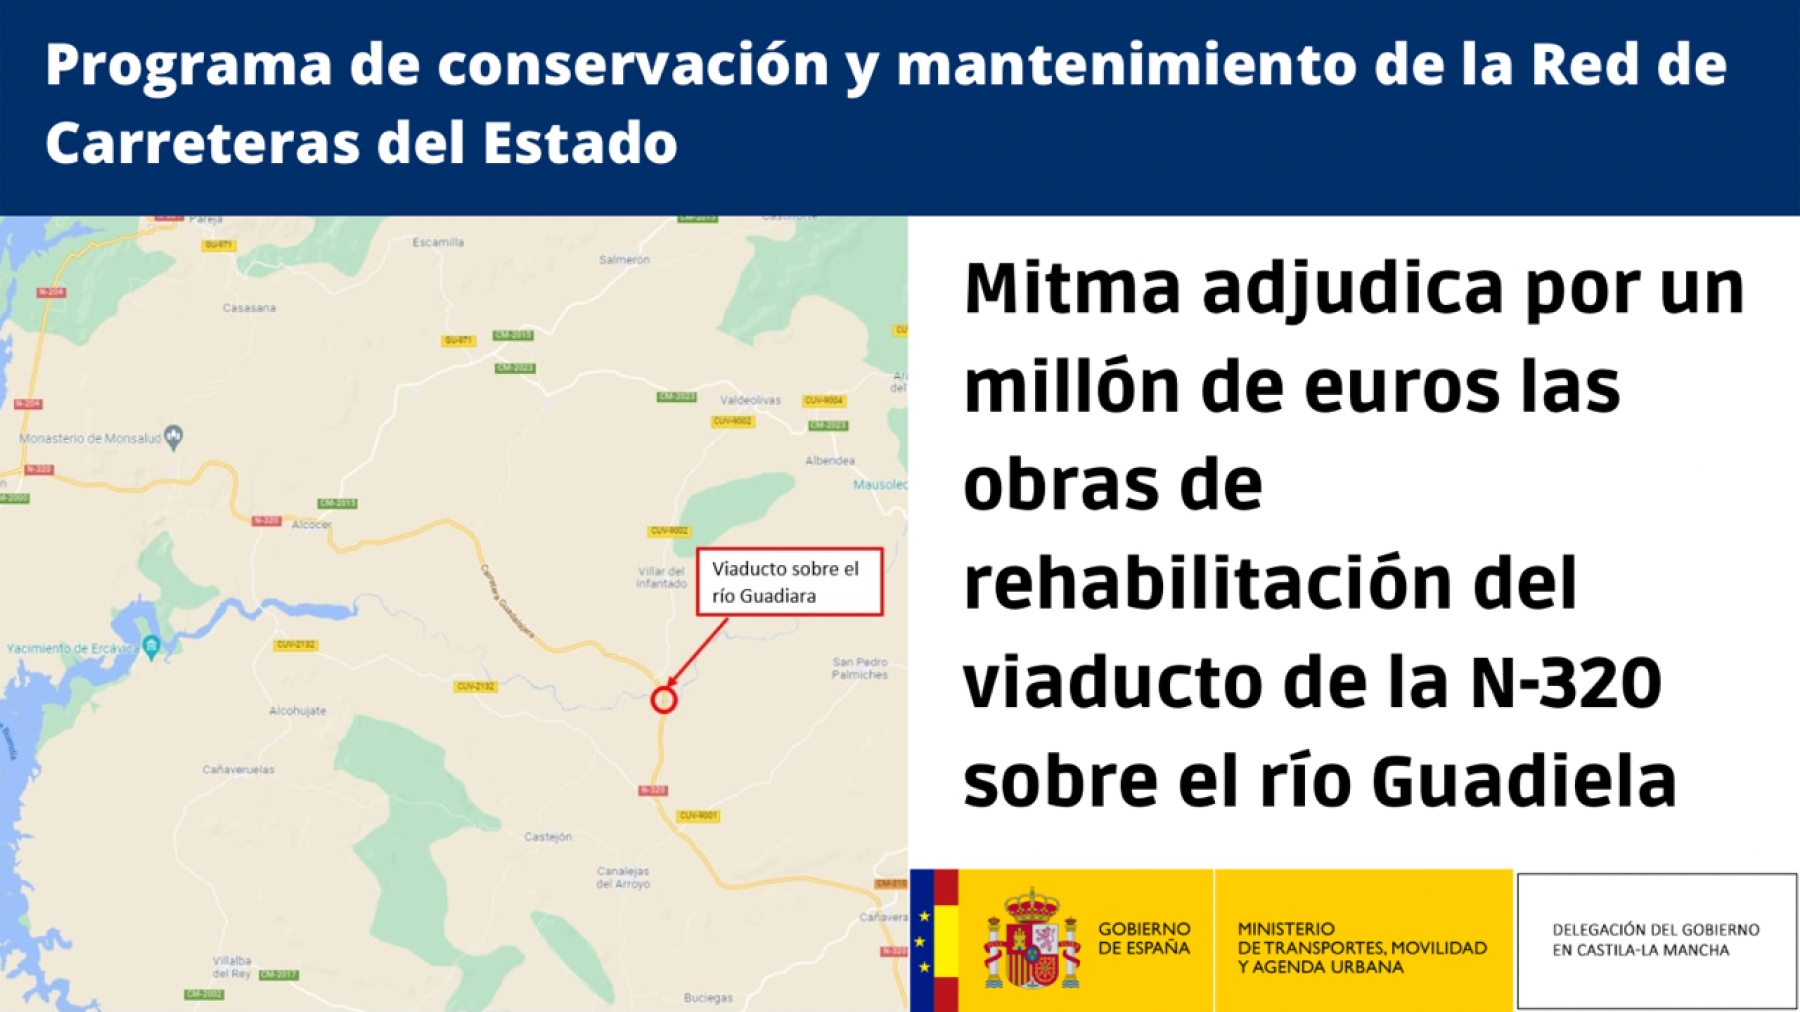 Mitma adjudica por un millón de euros las obras de rehabilitación del viaducto de la N-320 sobre el río Guadiela